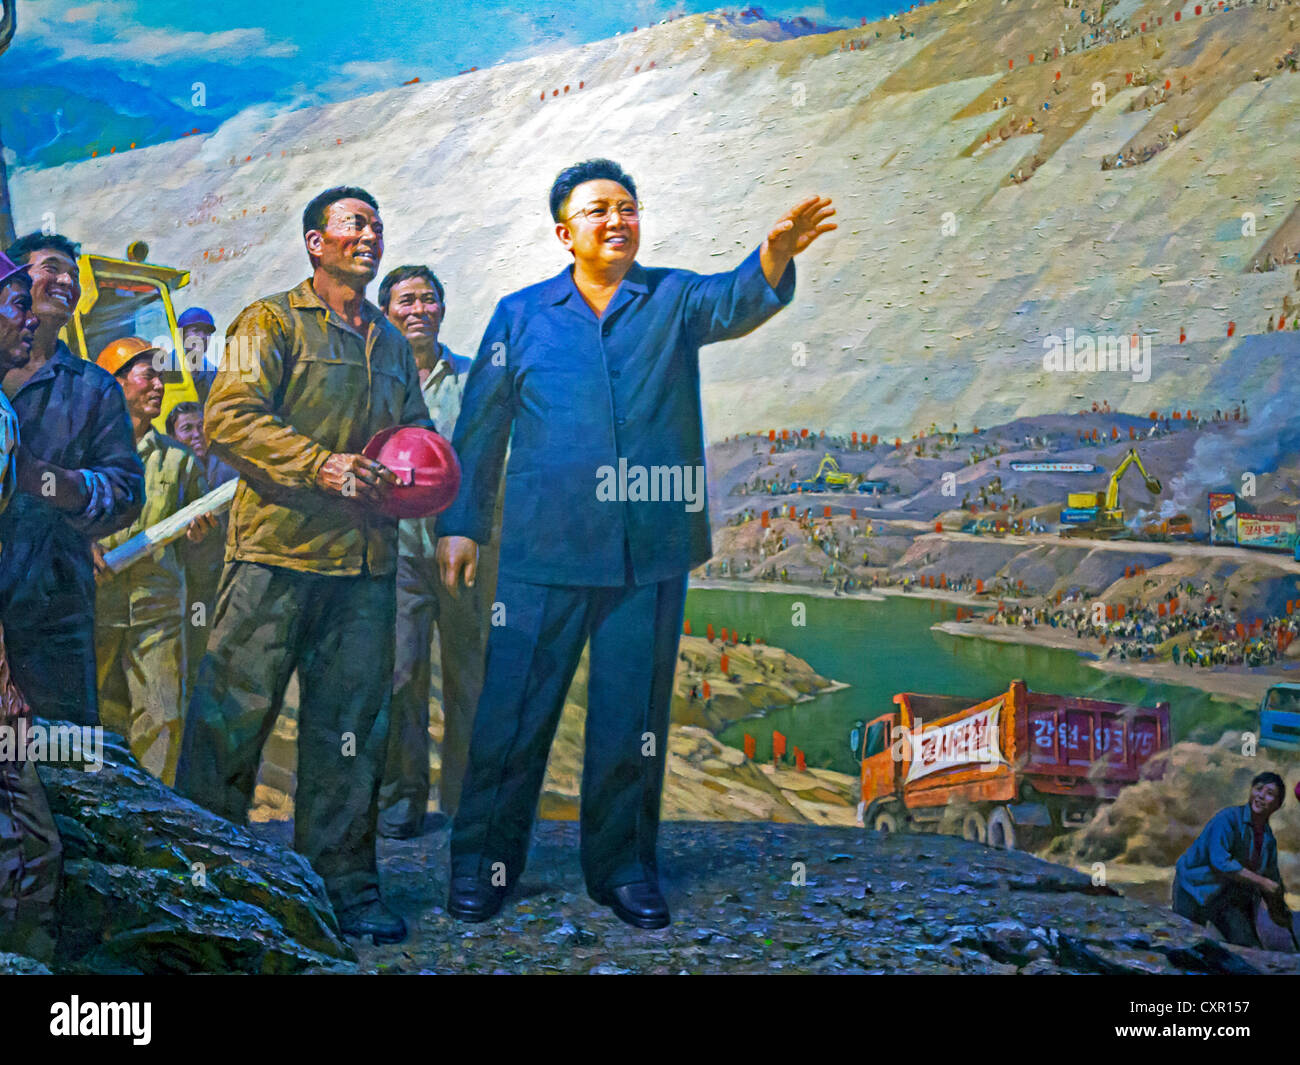 Popoli democratici la Repubblica di Corea (DPRK), Corea del Nord Pyongyang, pittura in coreano Art Museum di leader Kim Jong Il Foto Stock